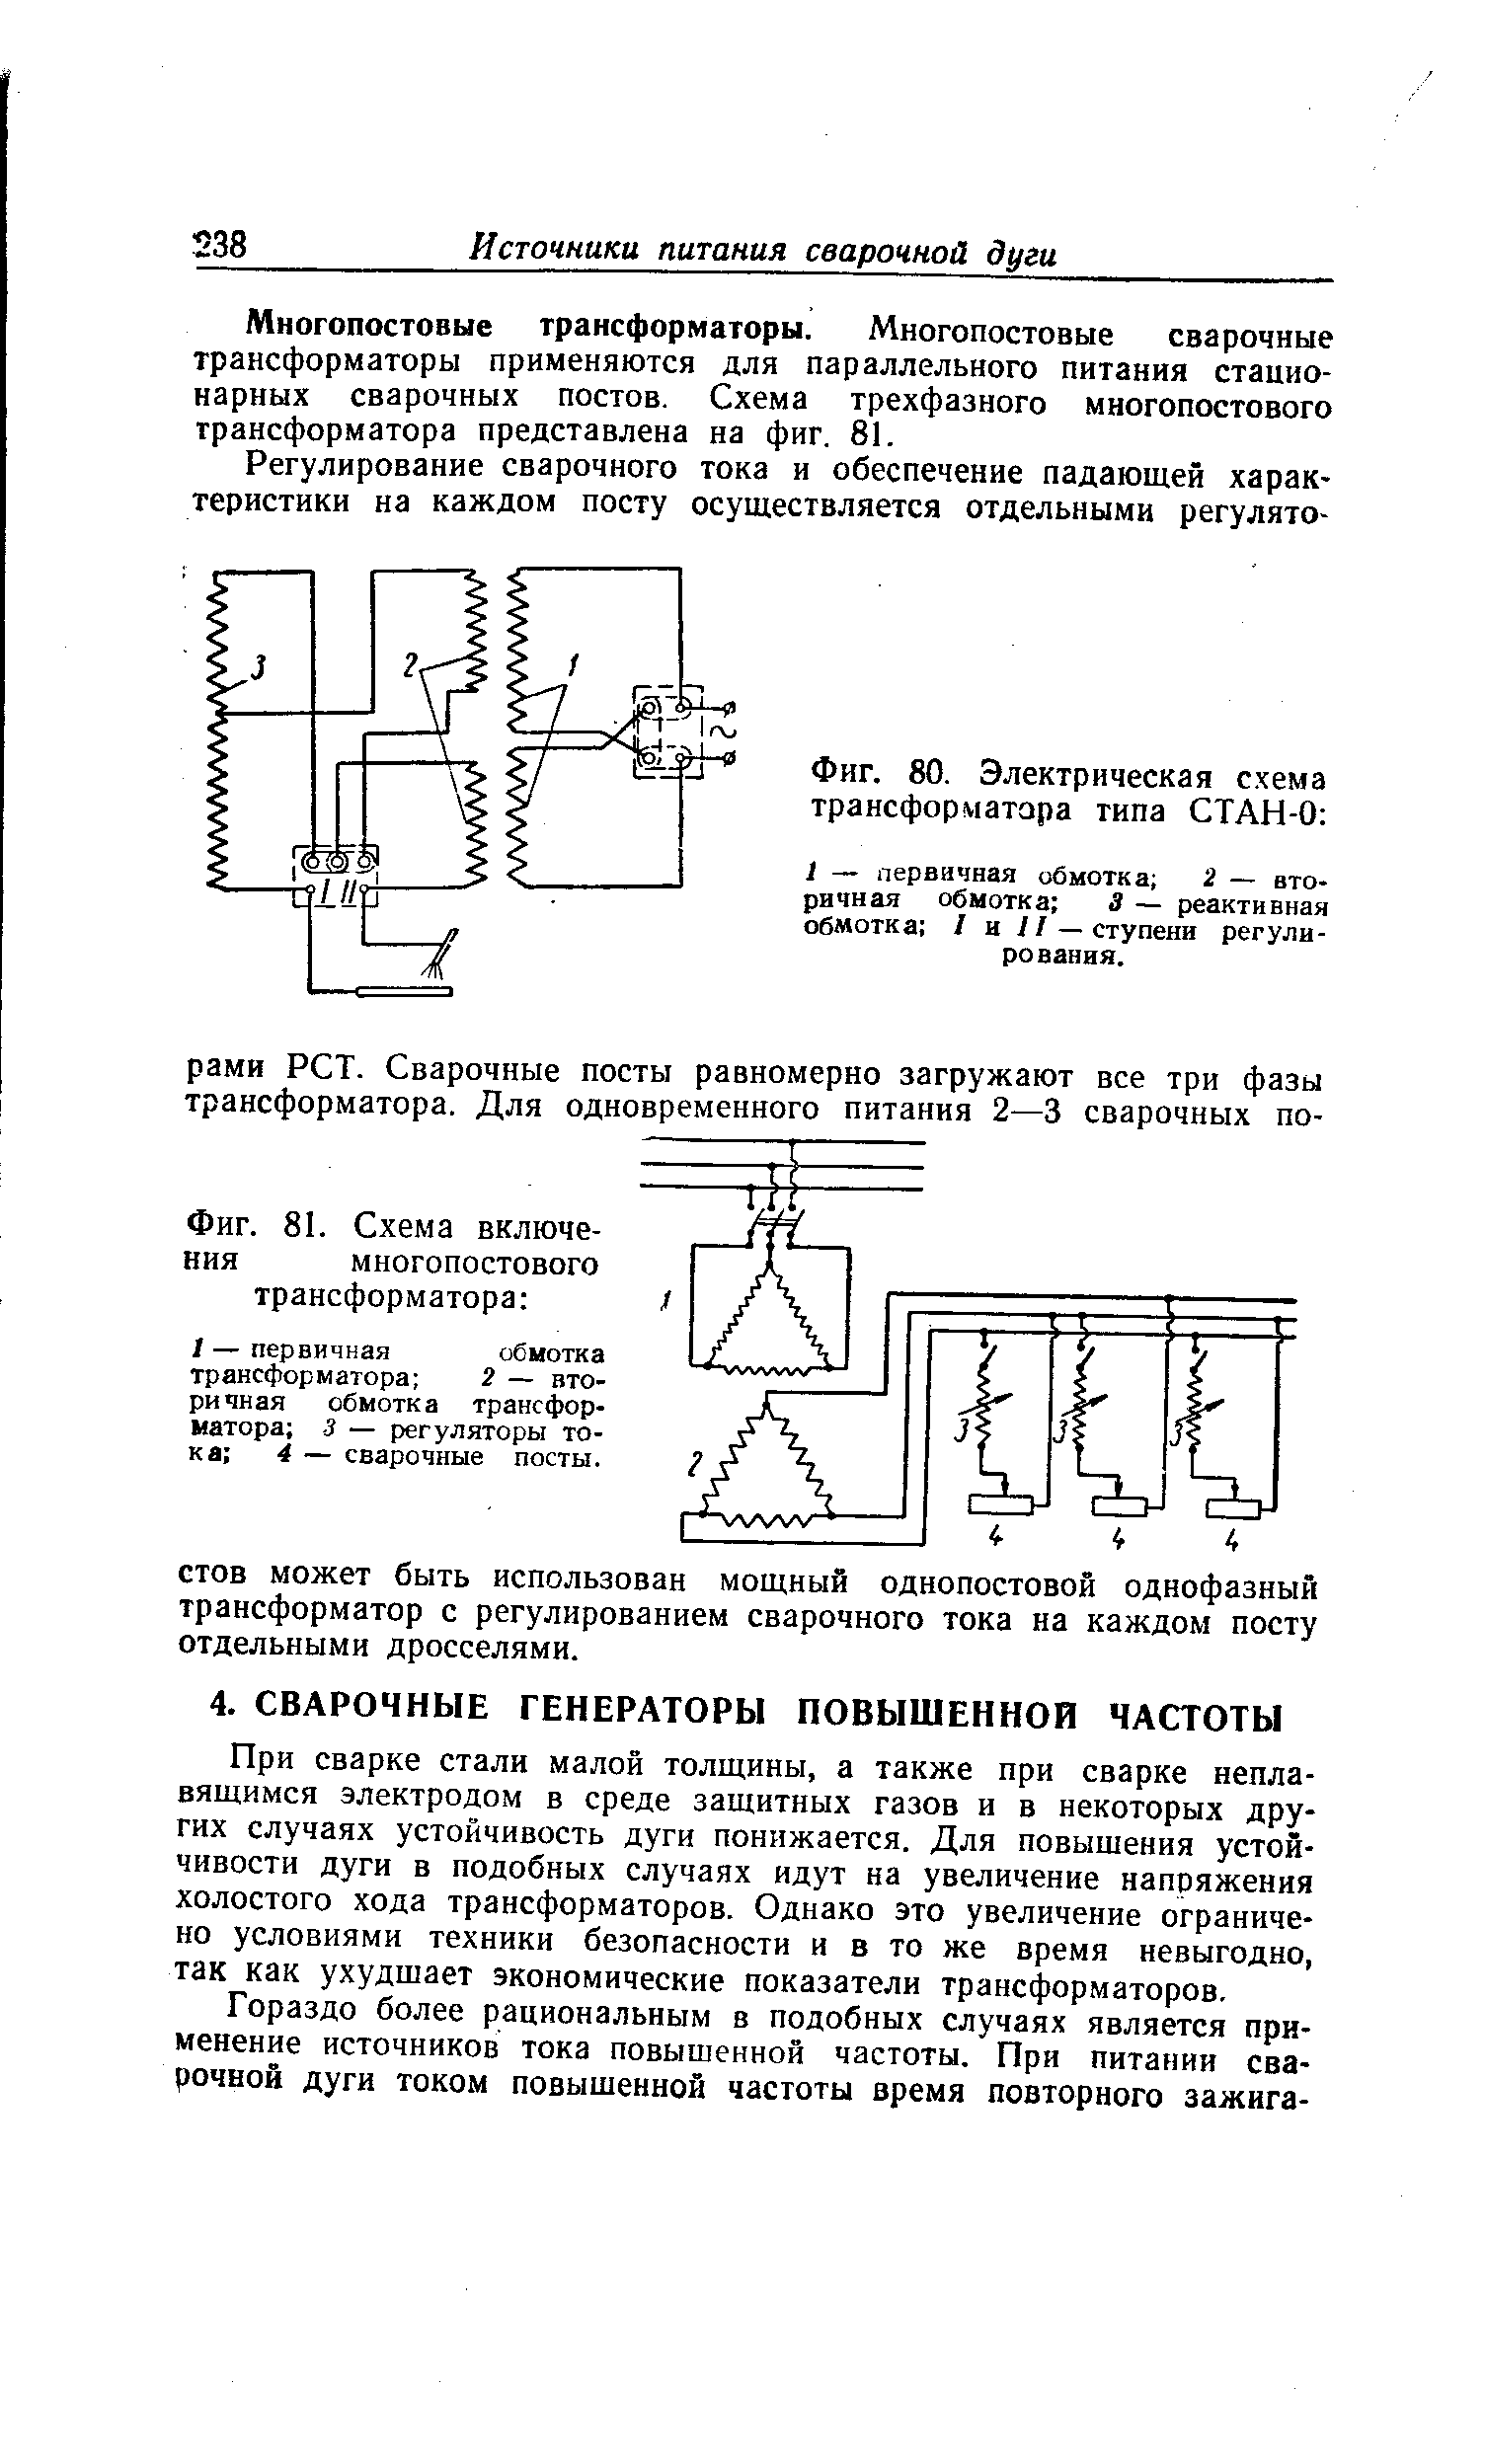 Фиг. 80. Электрическая схема трансформатора типа СТАН-0 